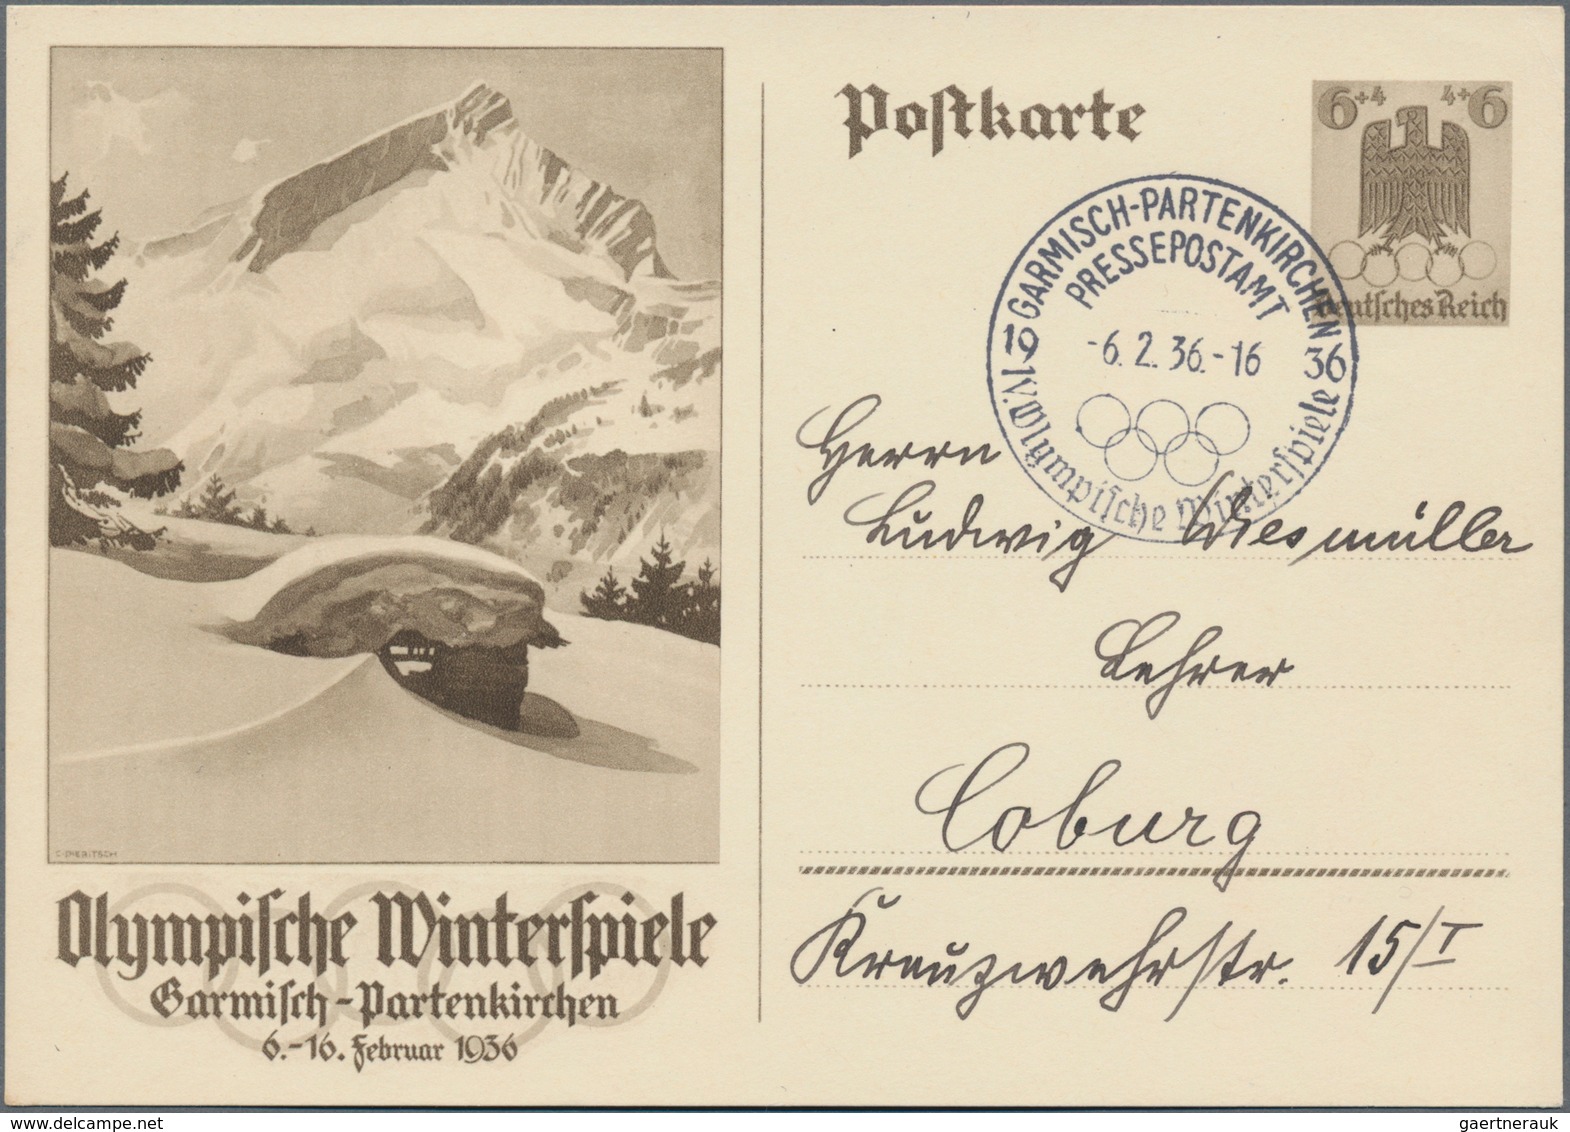 Thematik: Olympische Spiele / olympic games: 1936 - Garmisch-Partenkirchen, hochwertige Spezialsamml